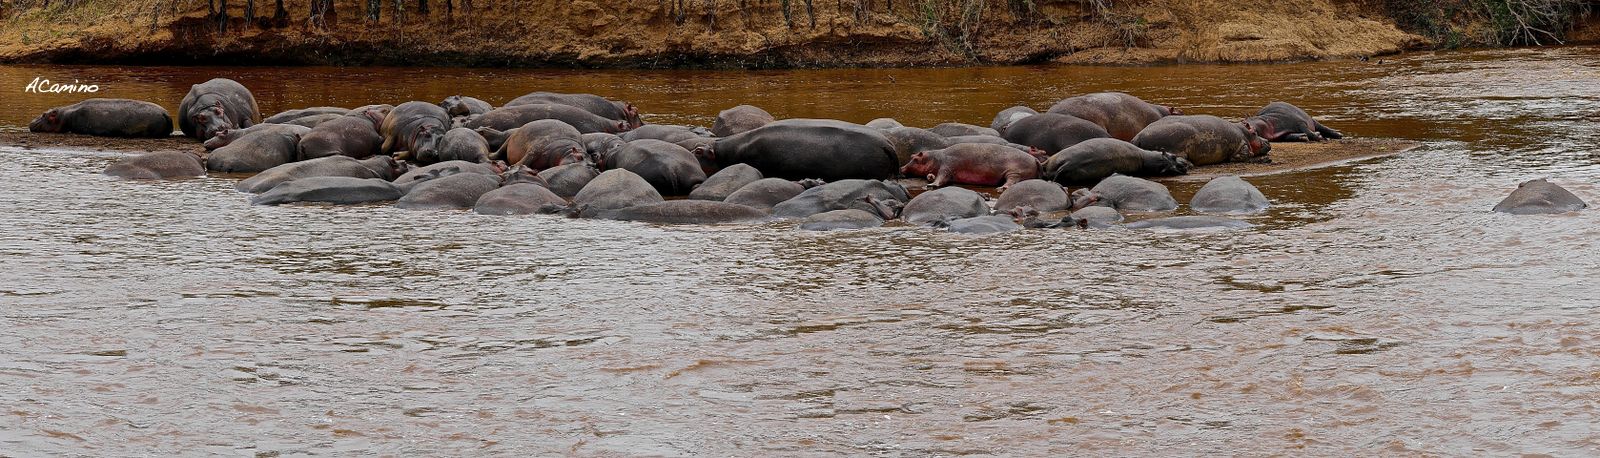 12 días de Safari en Kenia: Jambo bwana - Blogs de Kenia - 2º safari en el Mara: Hipos, Leones, Leopardos, hienas, jirafas, puesta de sol (21)